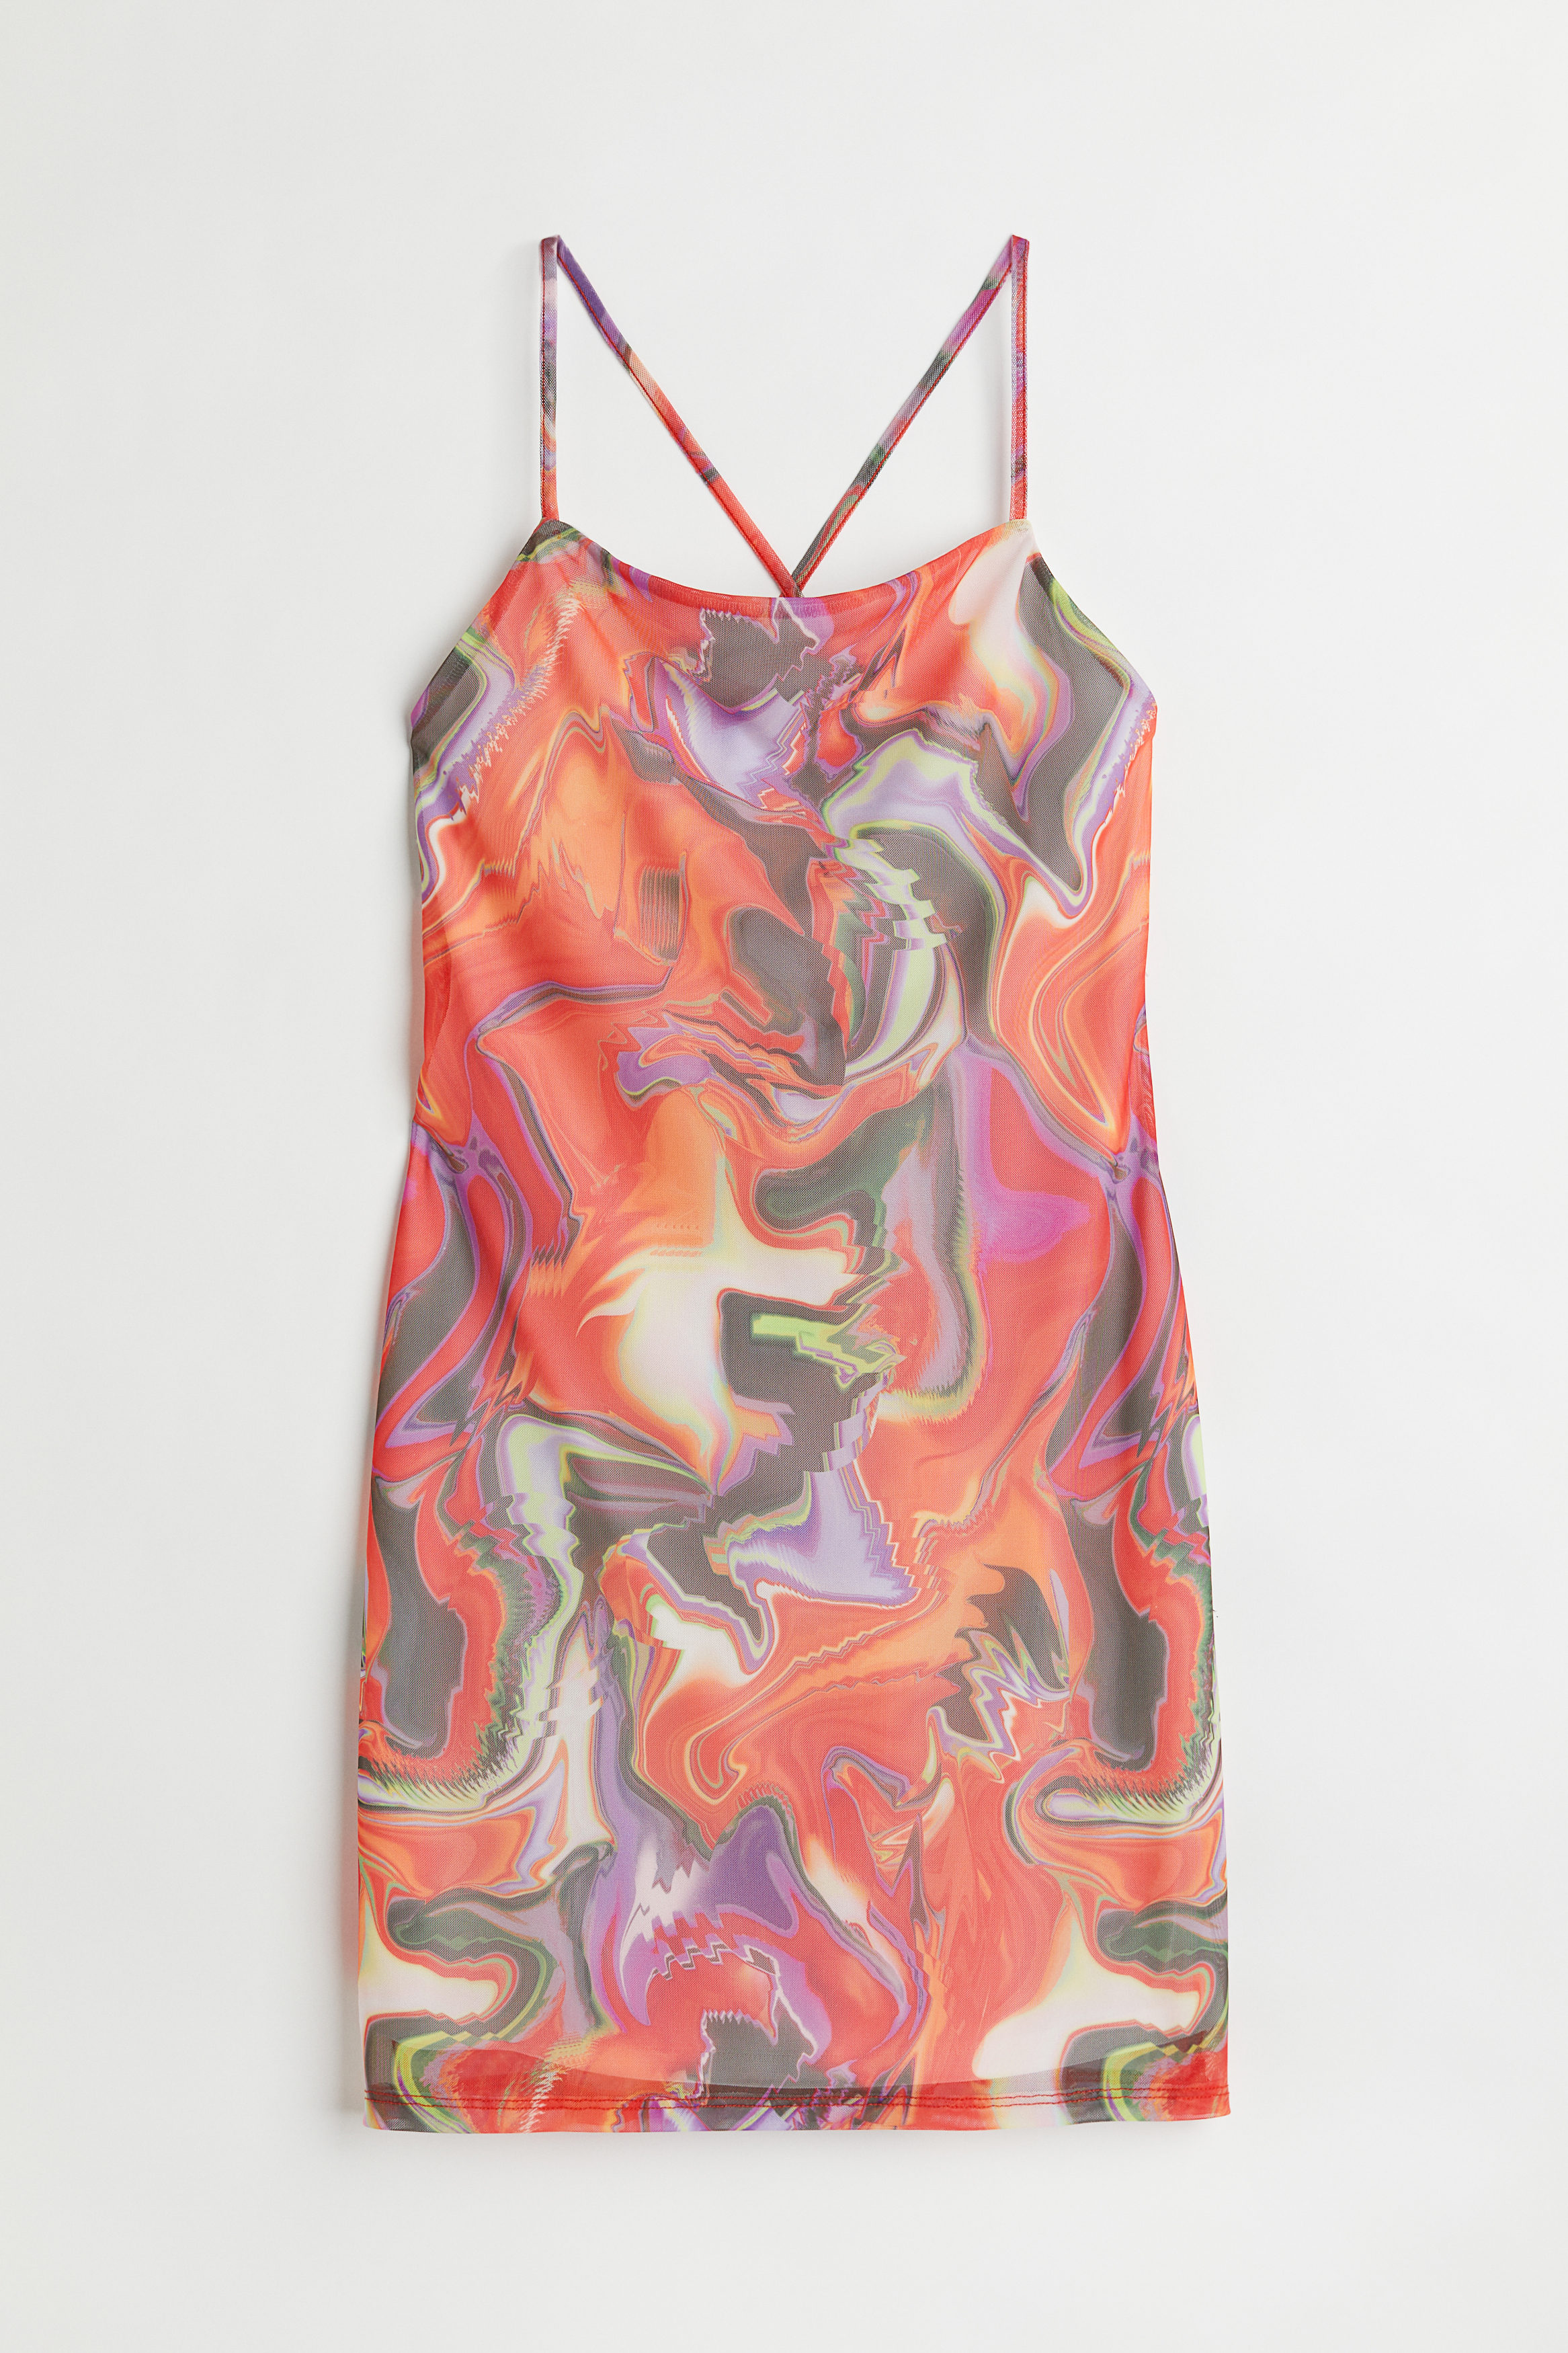 Billede af H&M Slip In-kjole I Mesh Orange/mønstret, Hverdagskjoler. Farve: Orange/patterned størrelse S